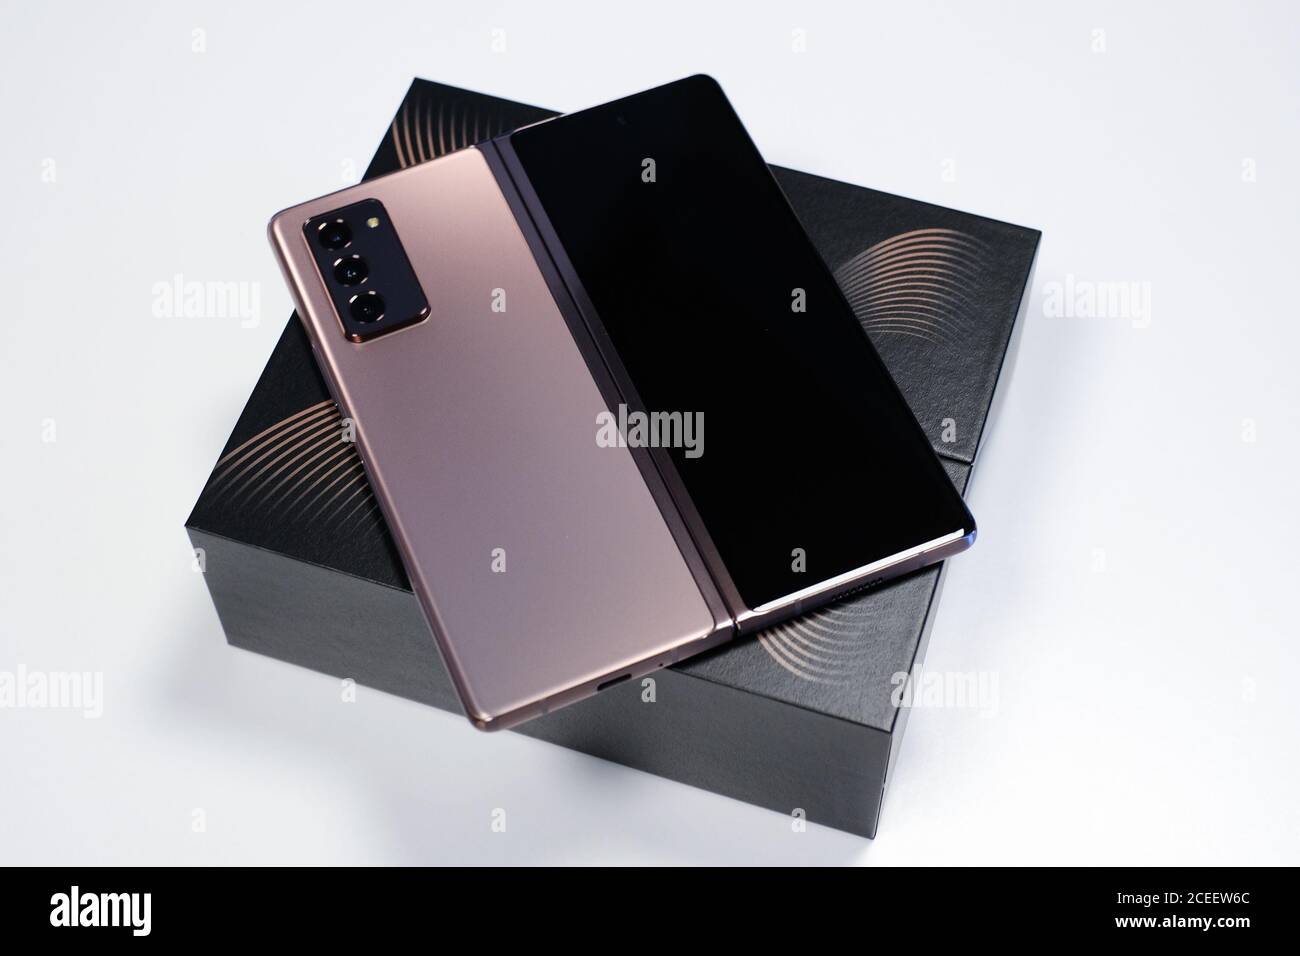 RIGA, SEPTEMBRE 2020 - le nouveau Samsung Galaxy Z Fold2 5G smartphone Android est affiché à des fins éditoriales. Banque D'Images